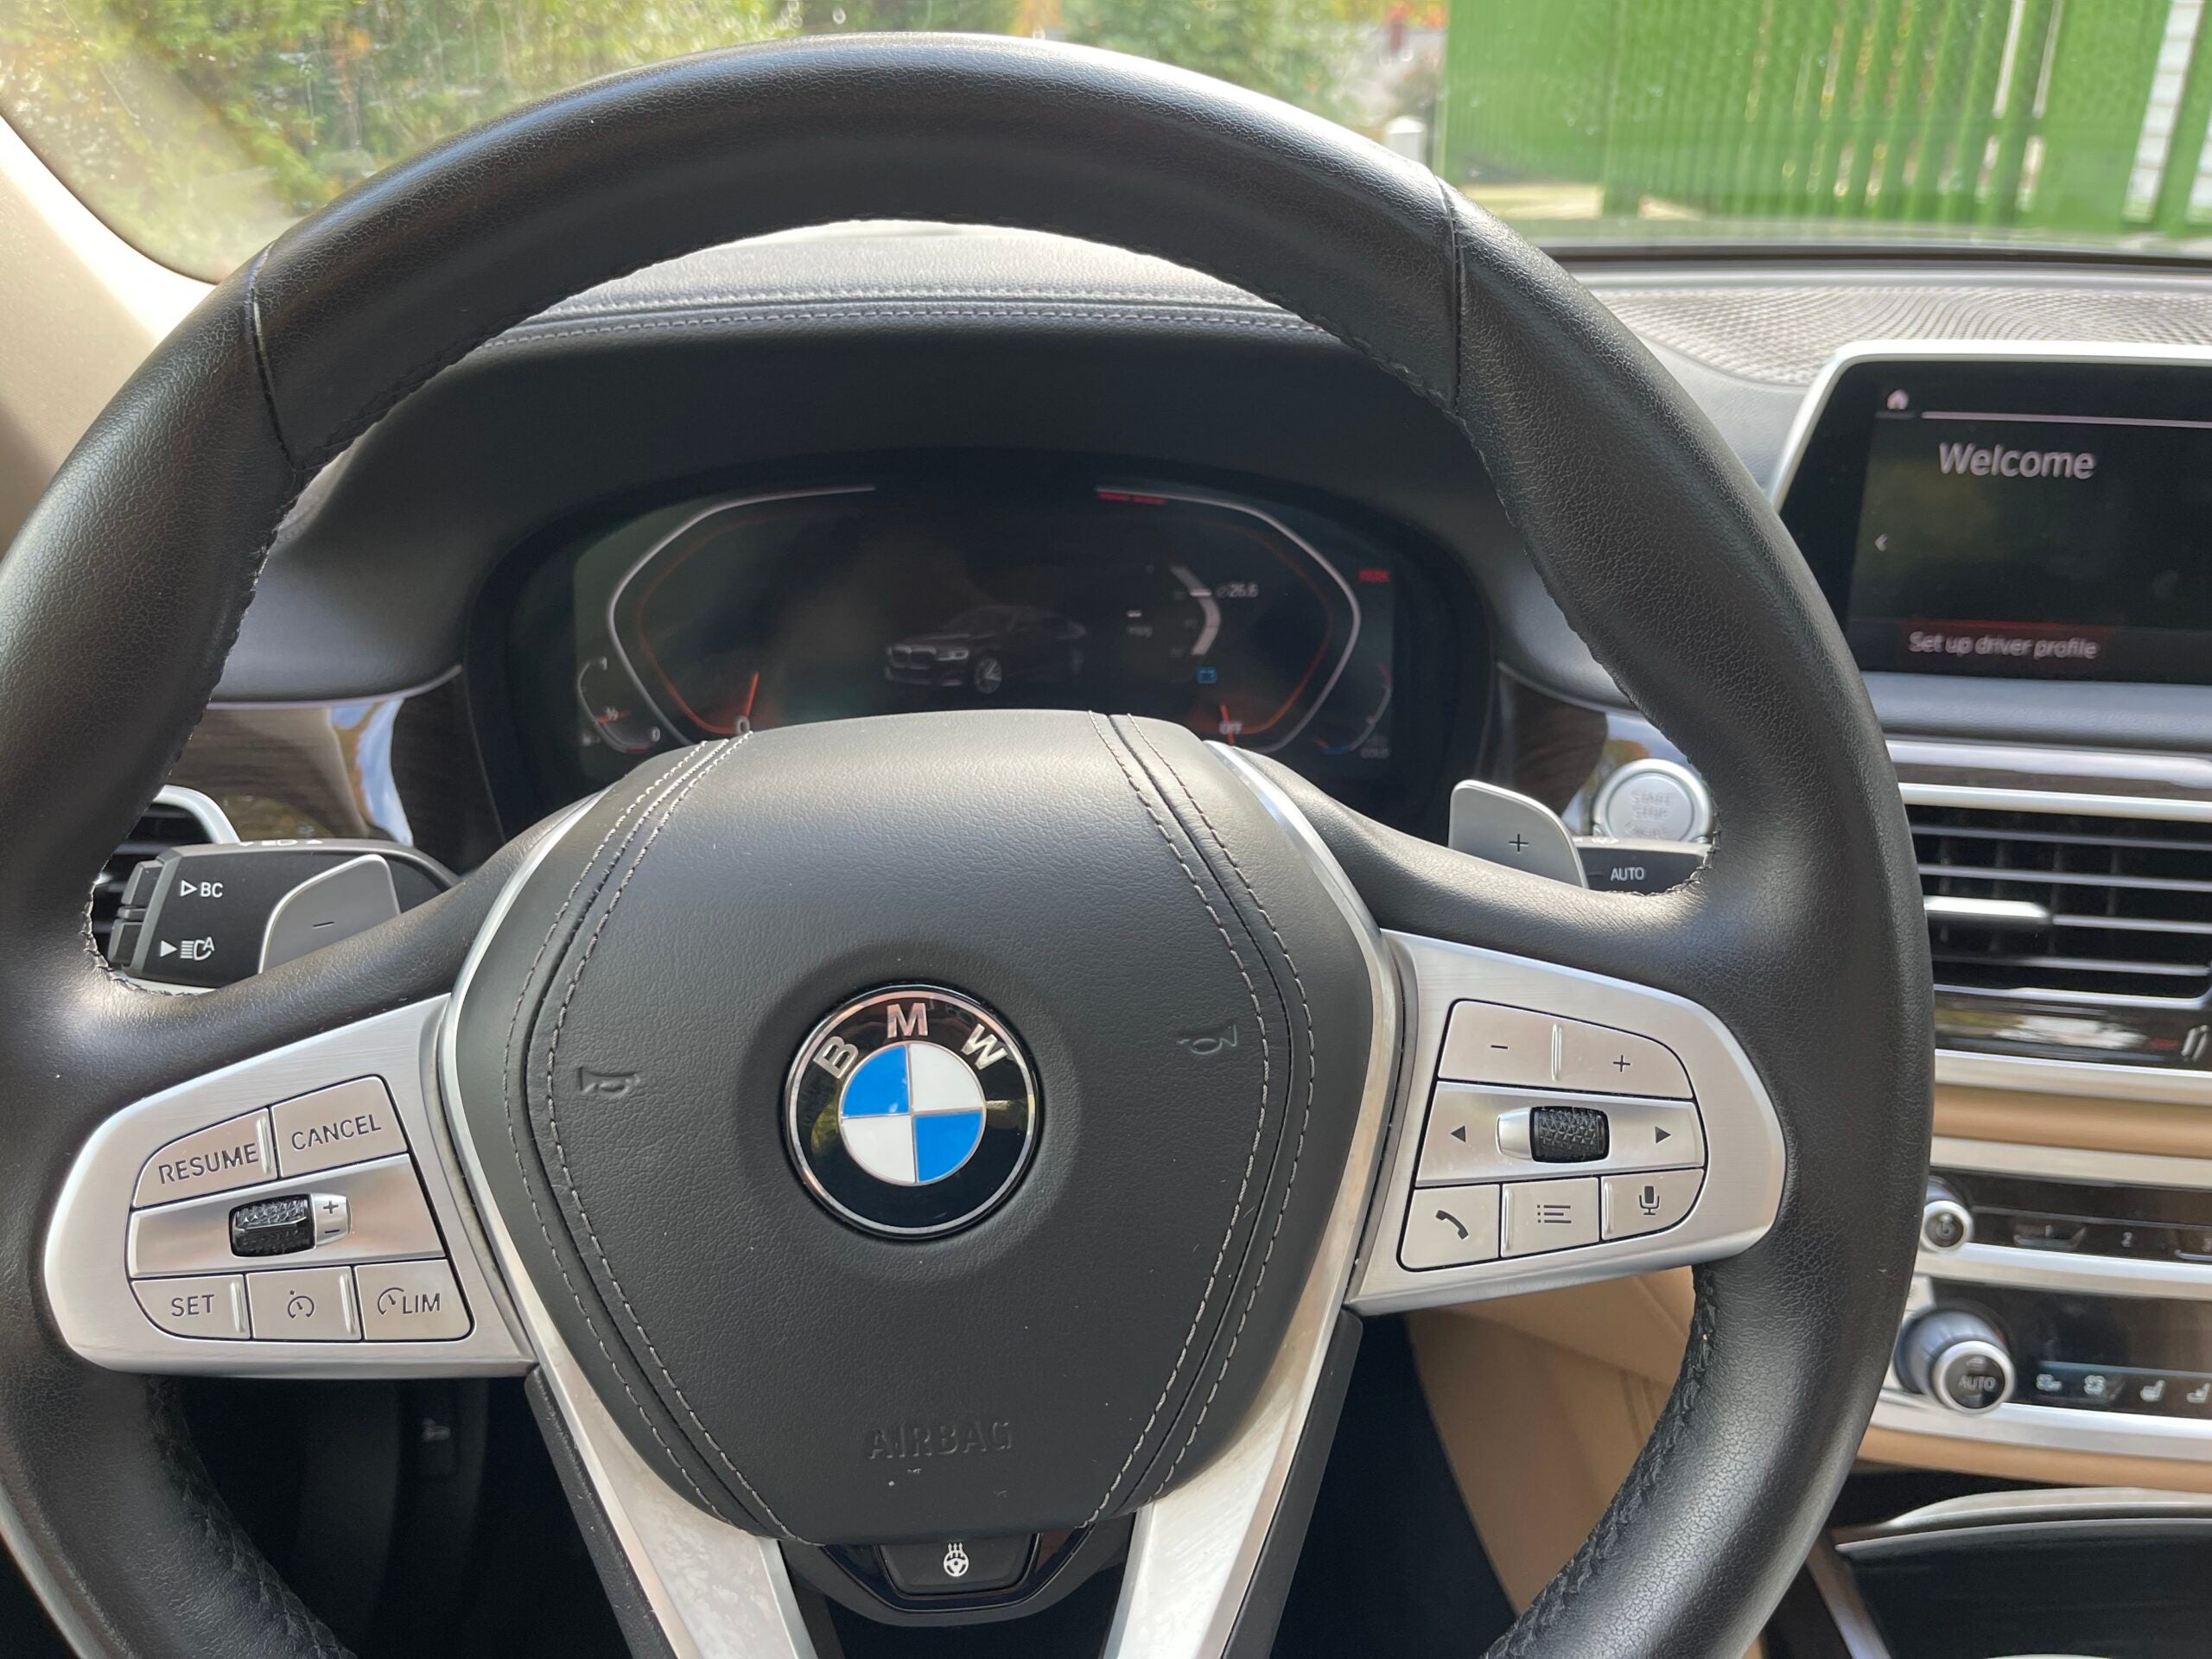 Steering wheel of car